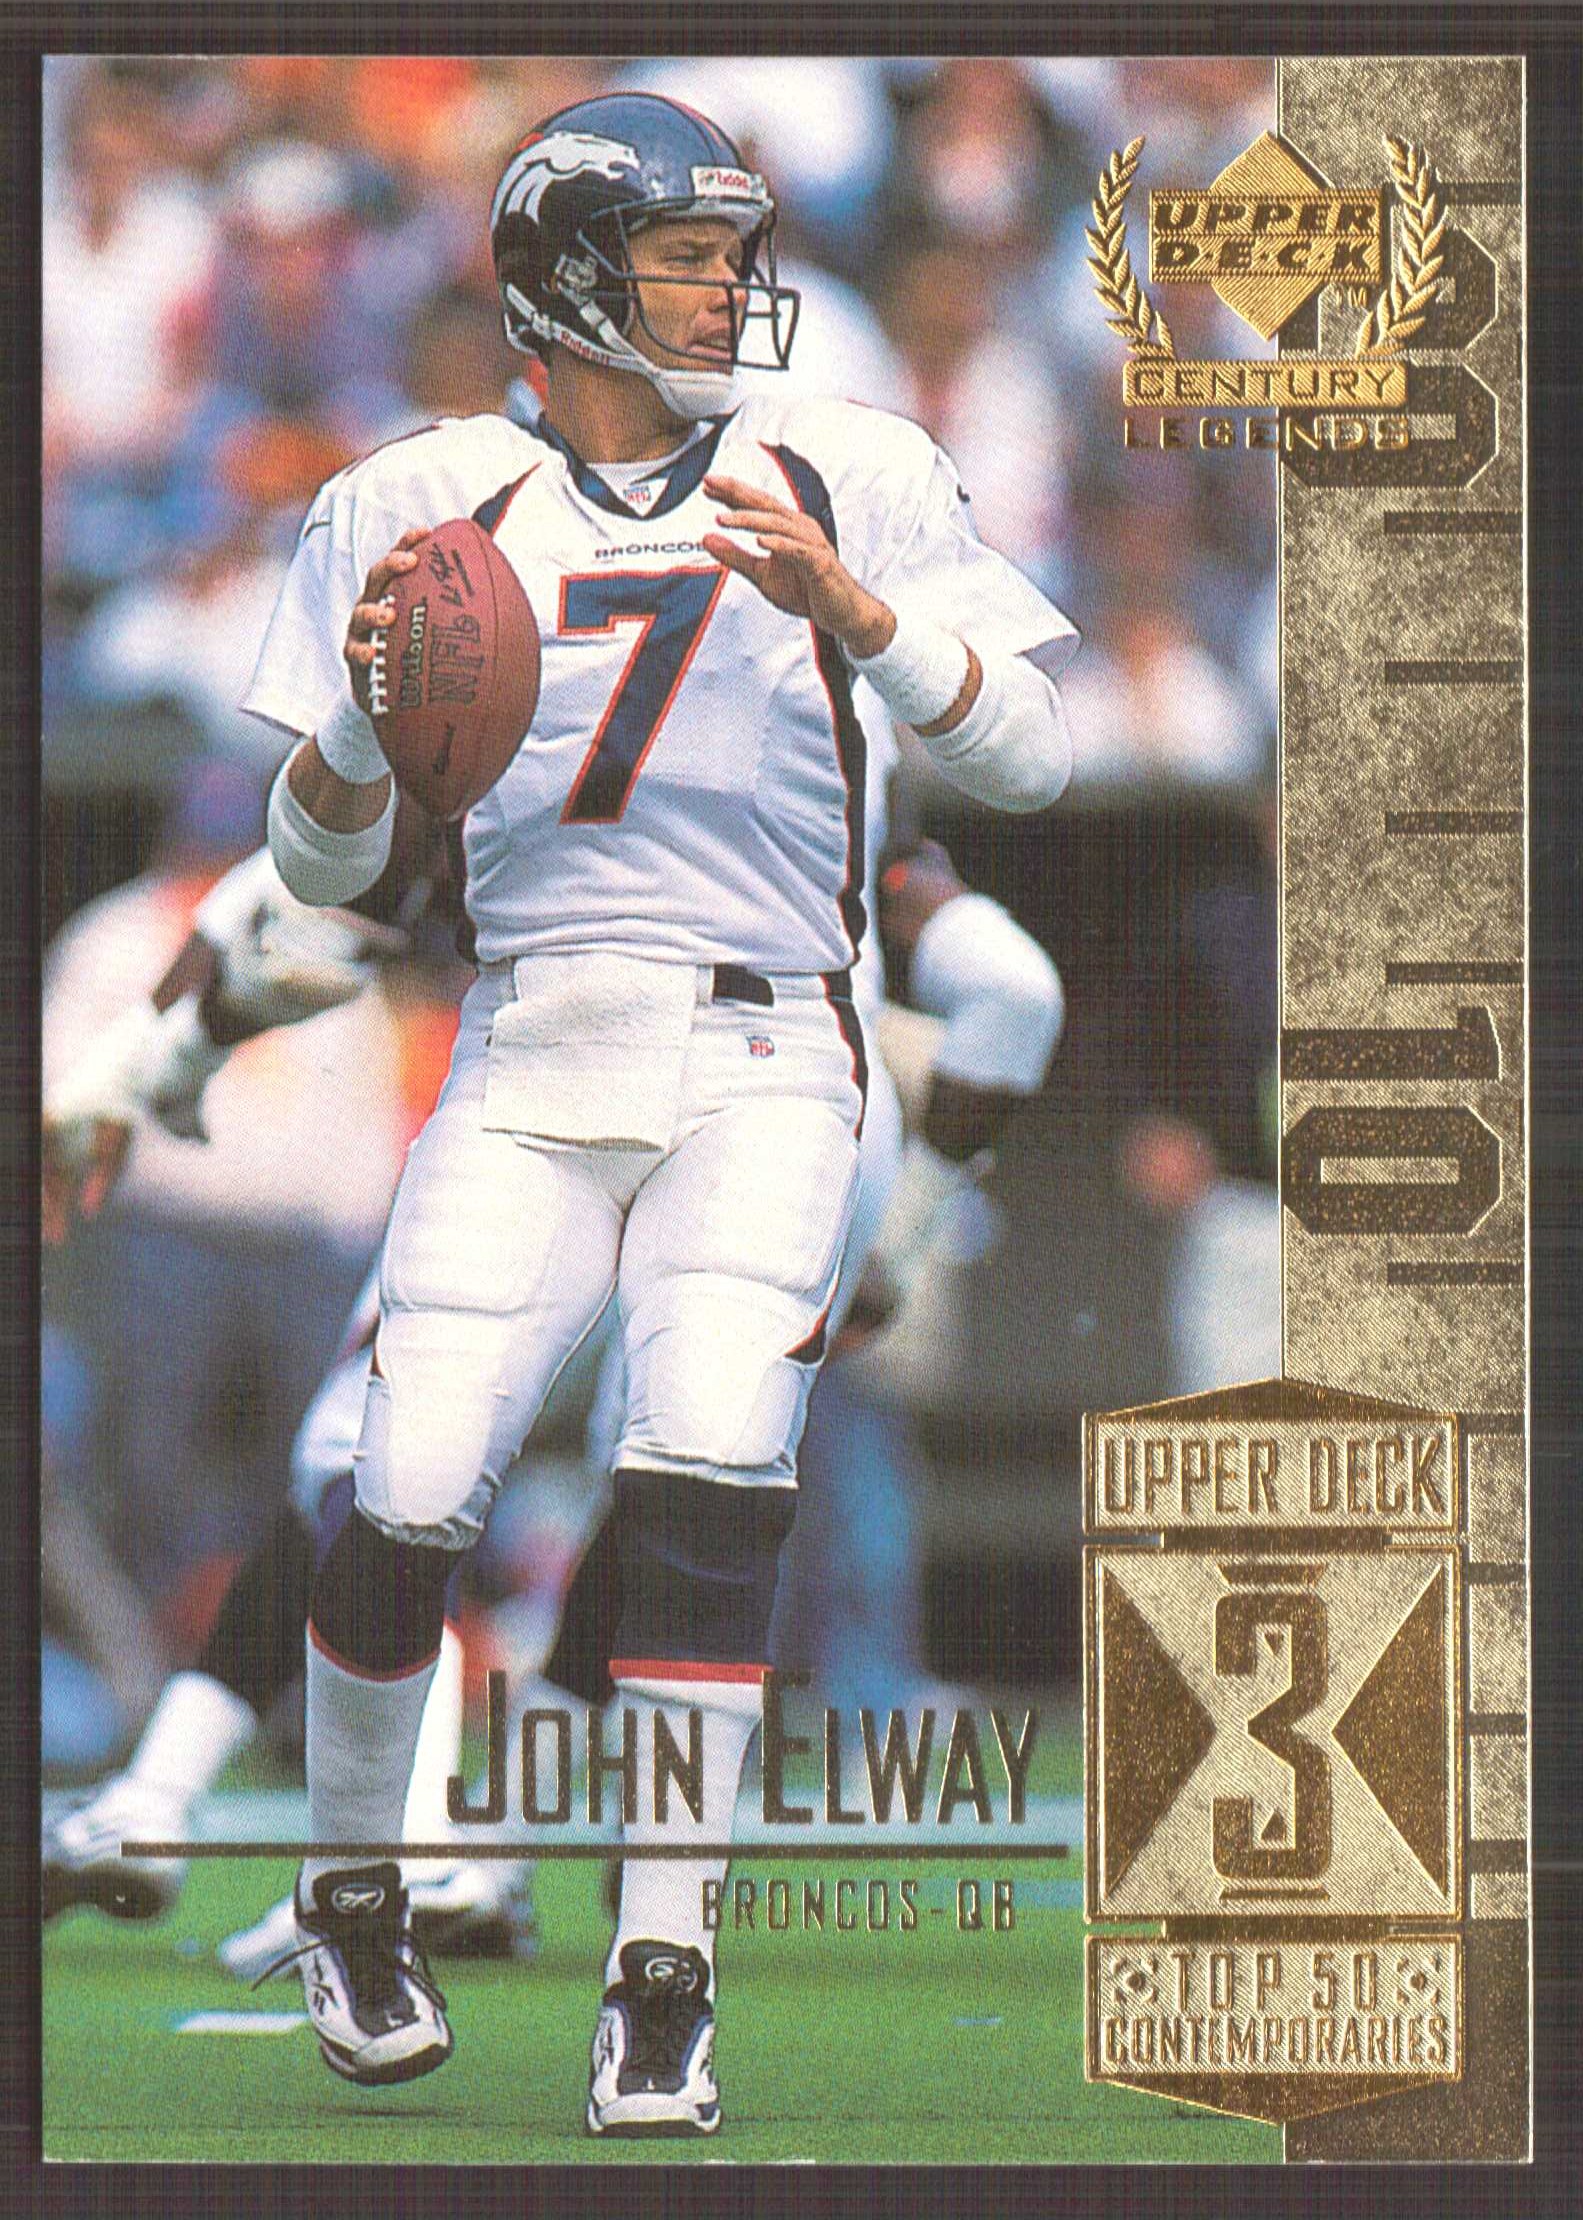 1999 Upper Deck Century Legends #53 John Elway